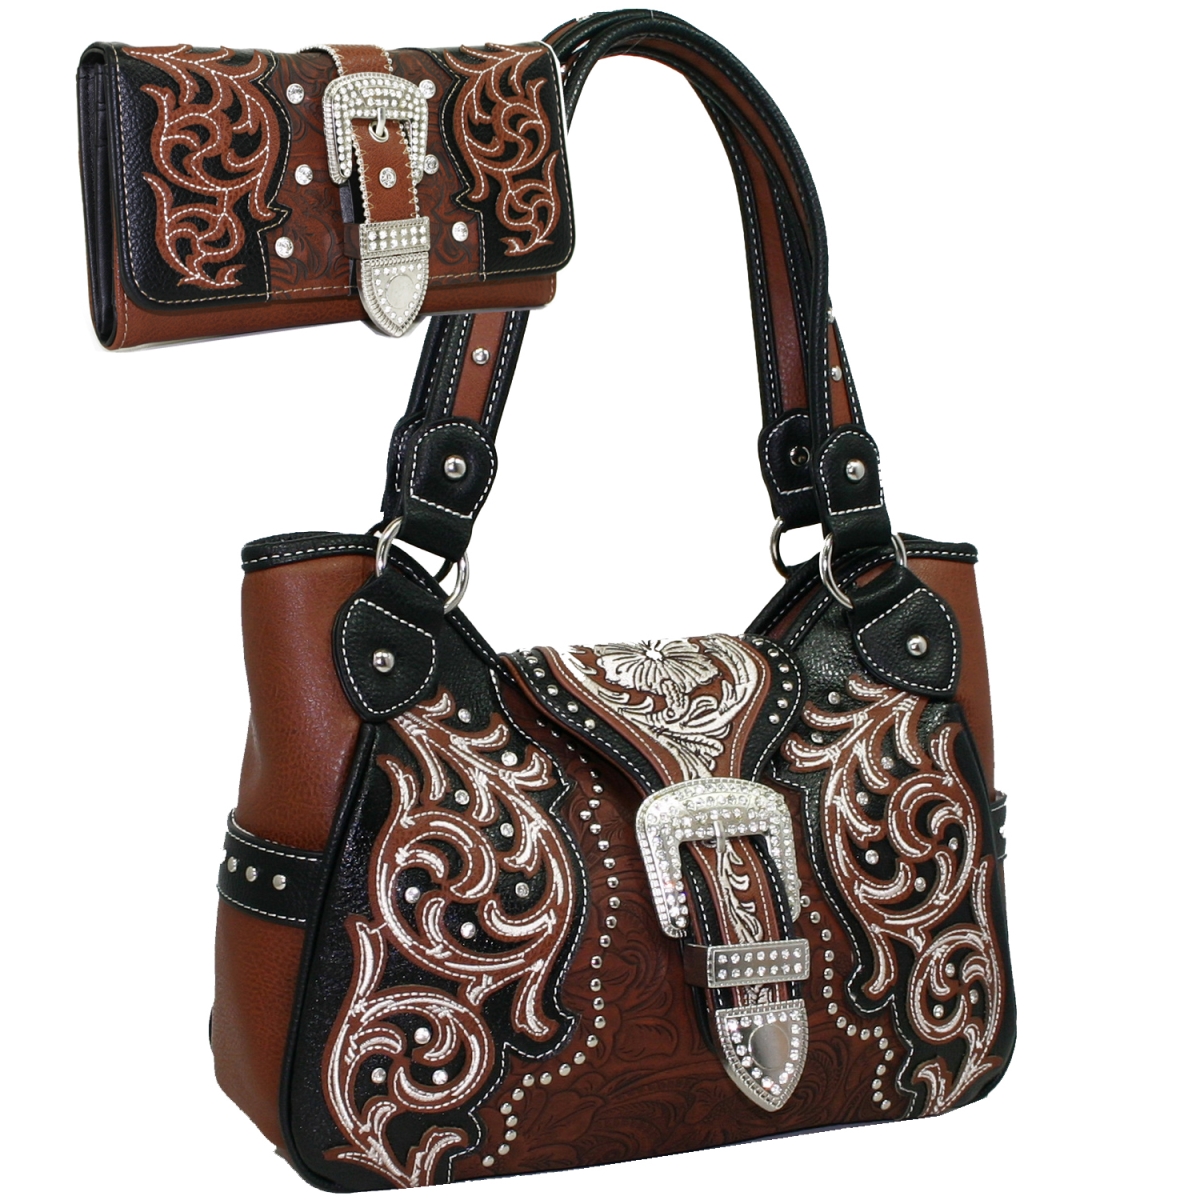 Picture of Gold Rush BT921SET-BRN Black Floral Embroided Western Studded Shoulder Bag Wallet Set - Brown